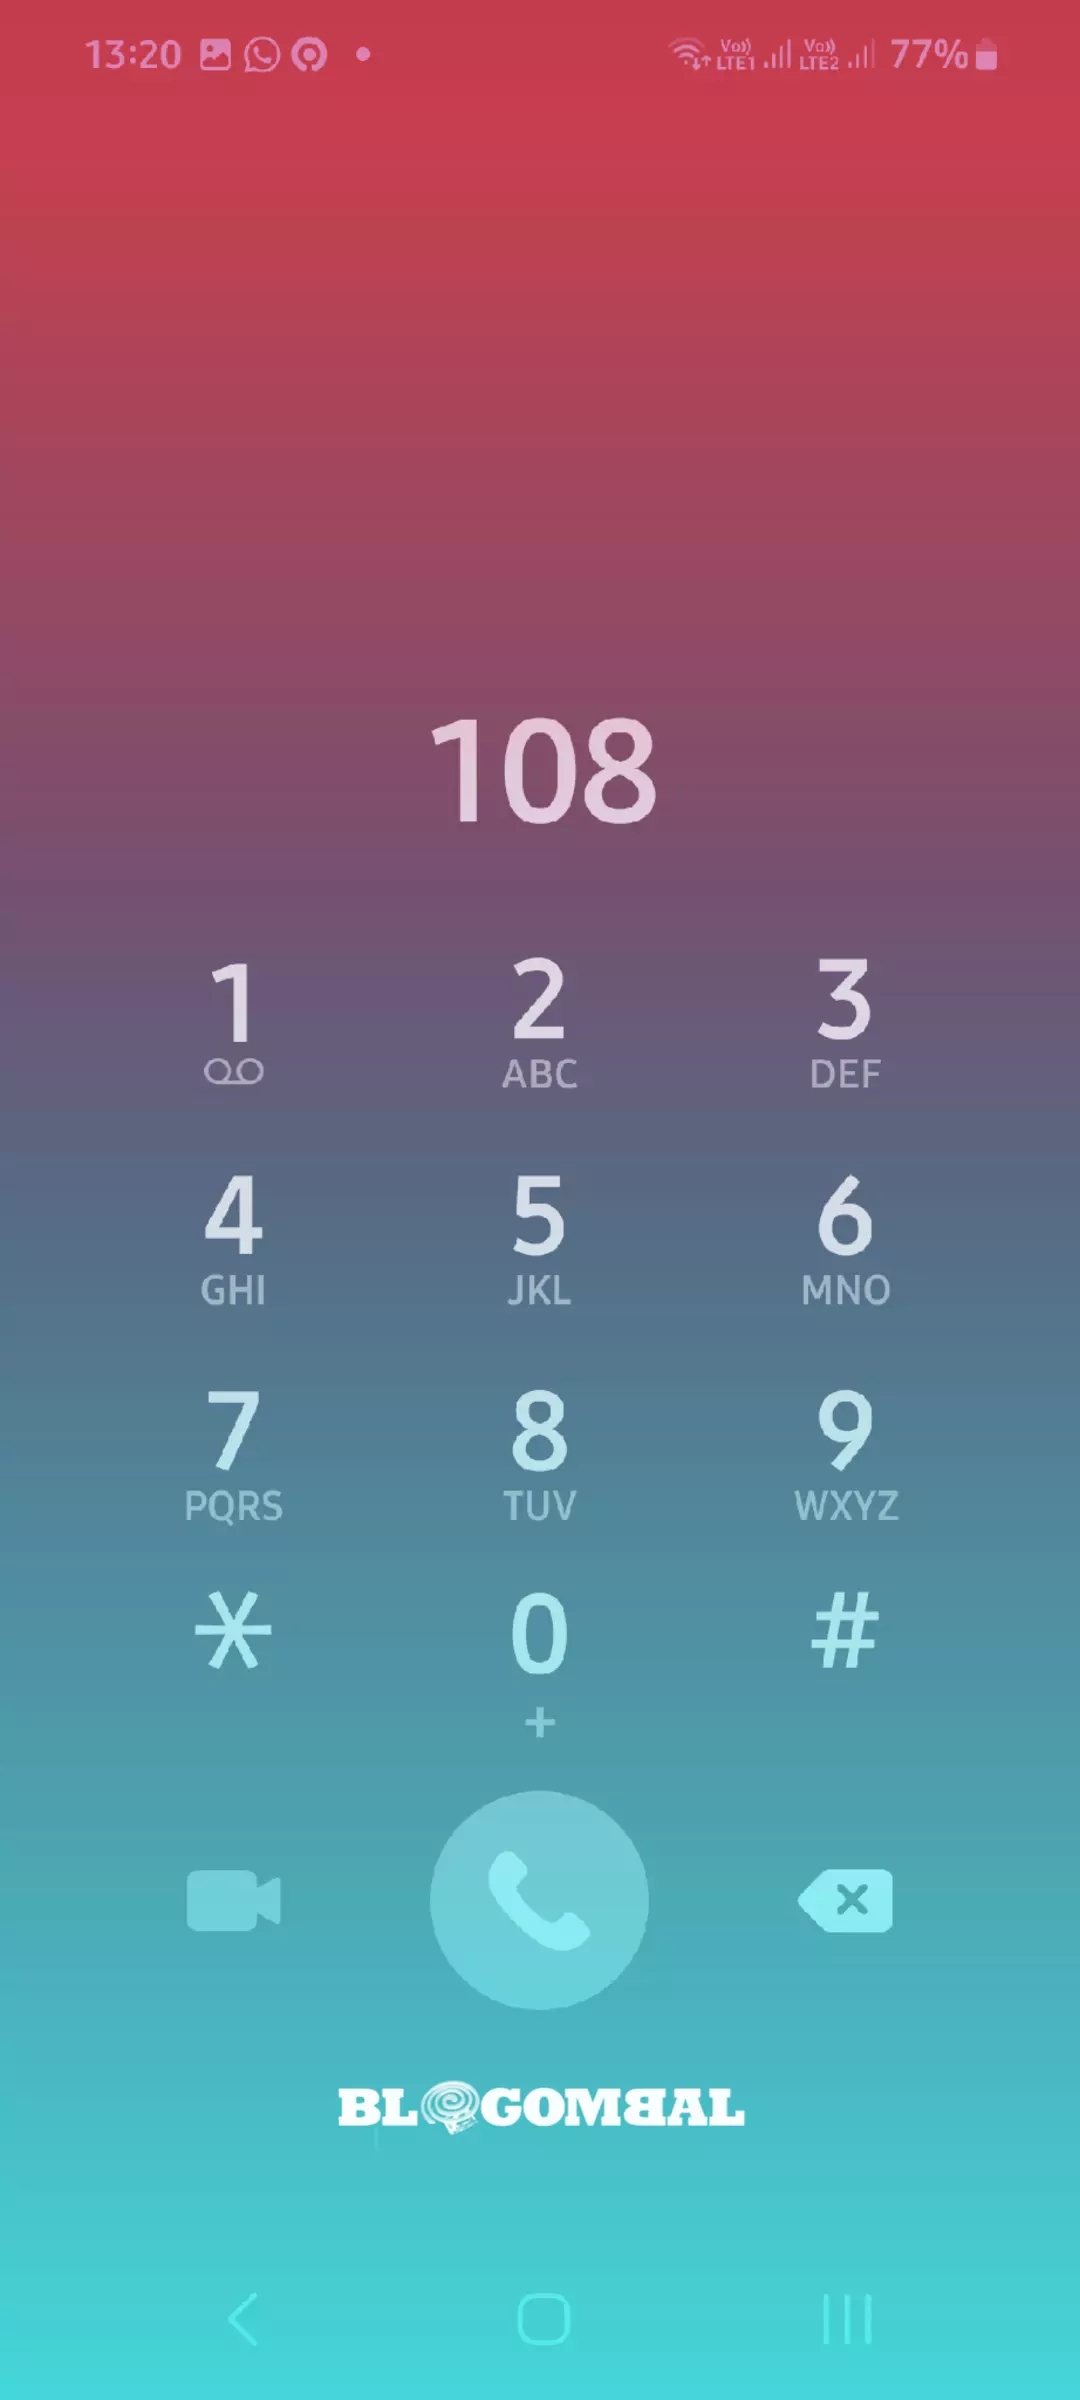 Layanan Telkom 108 masih beroperasi, bagaimana soal privasi? 